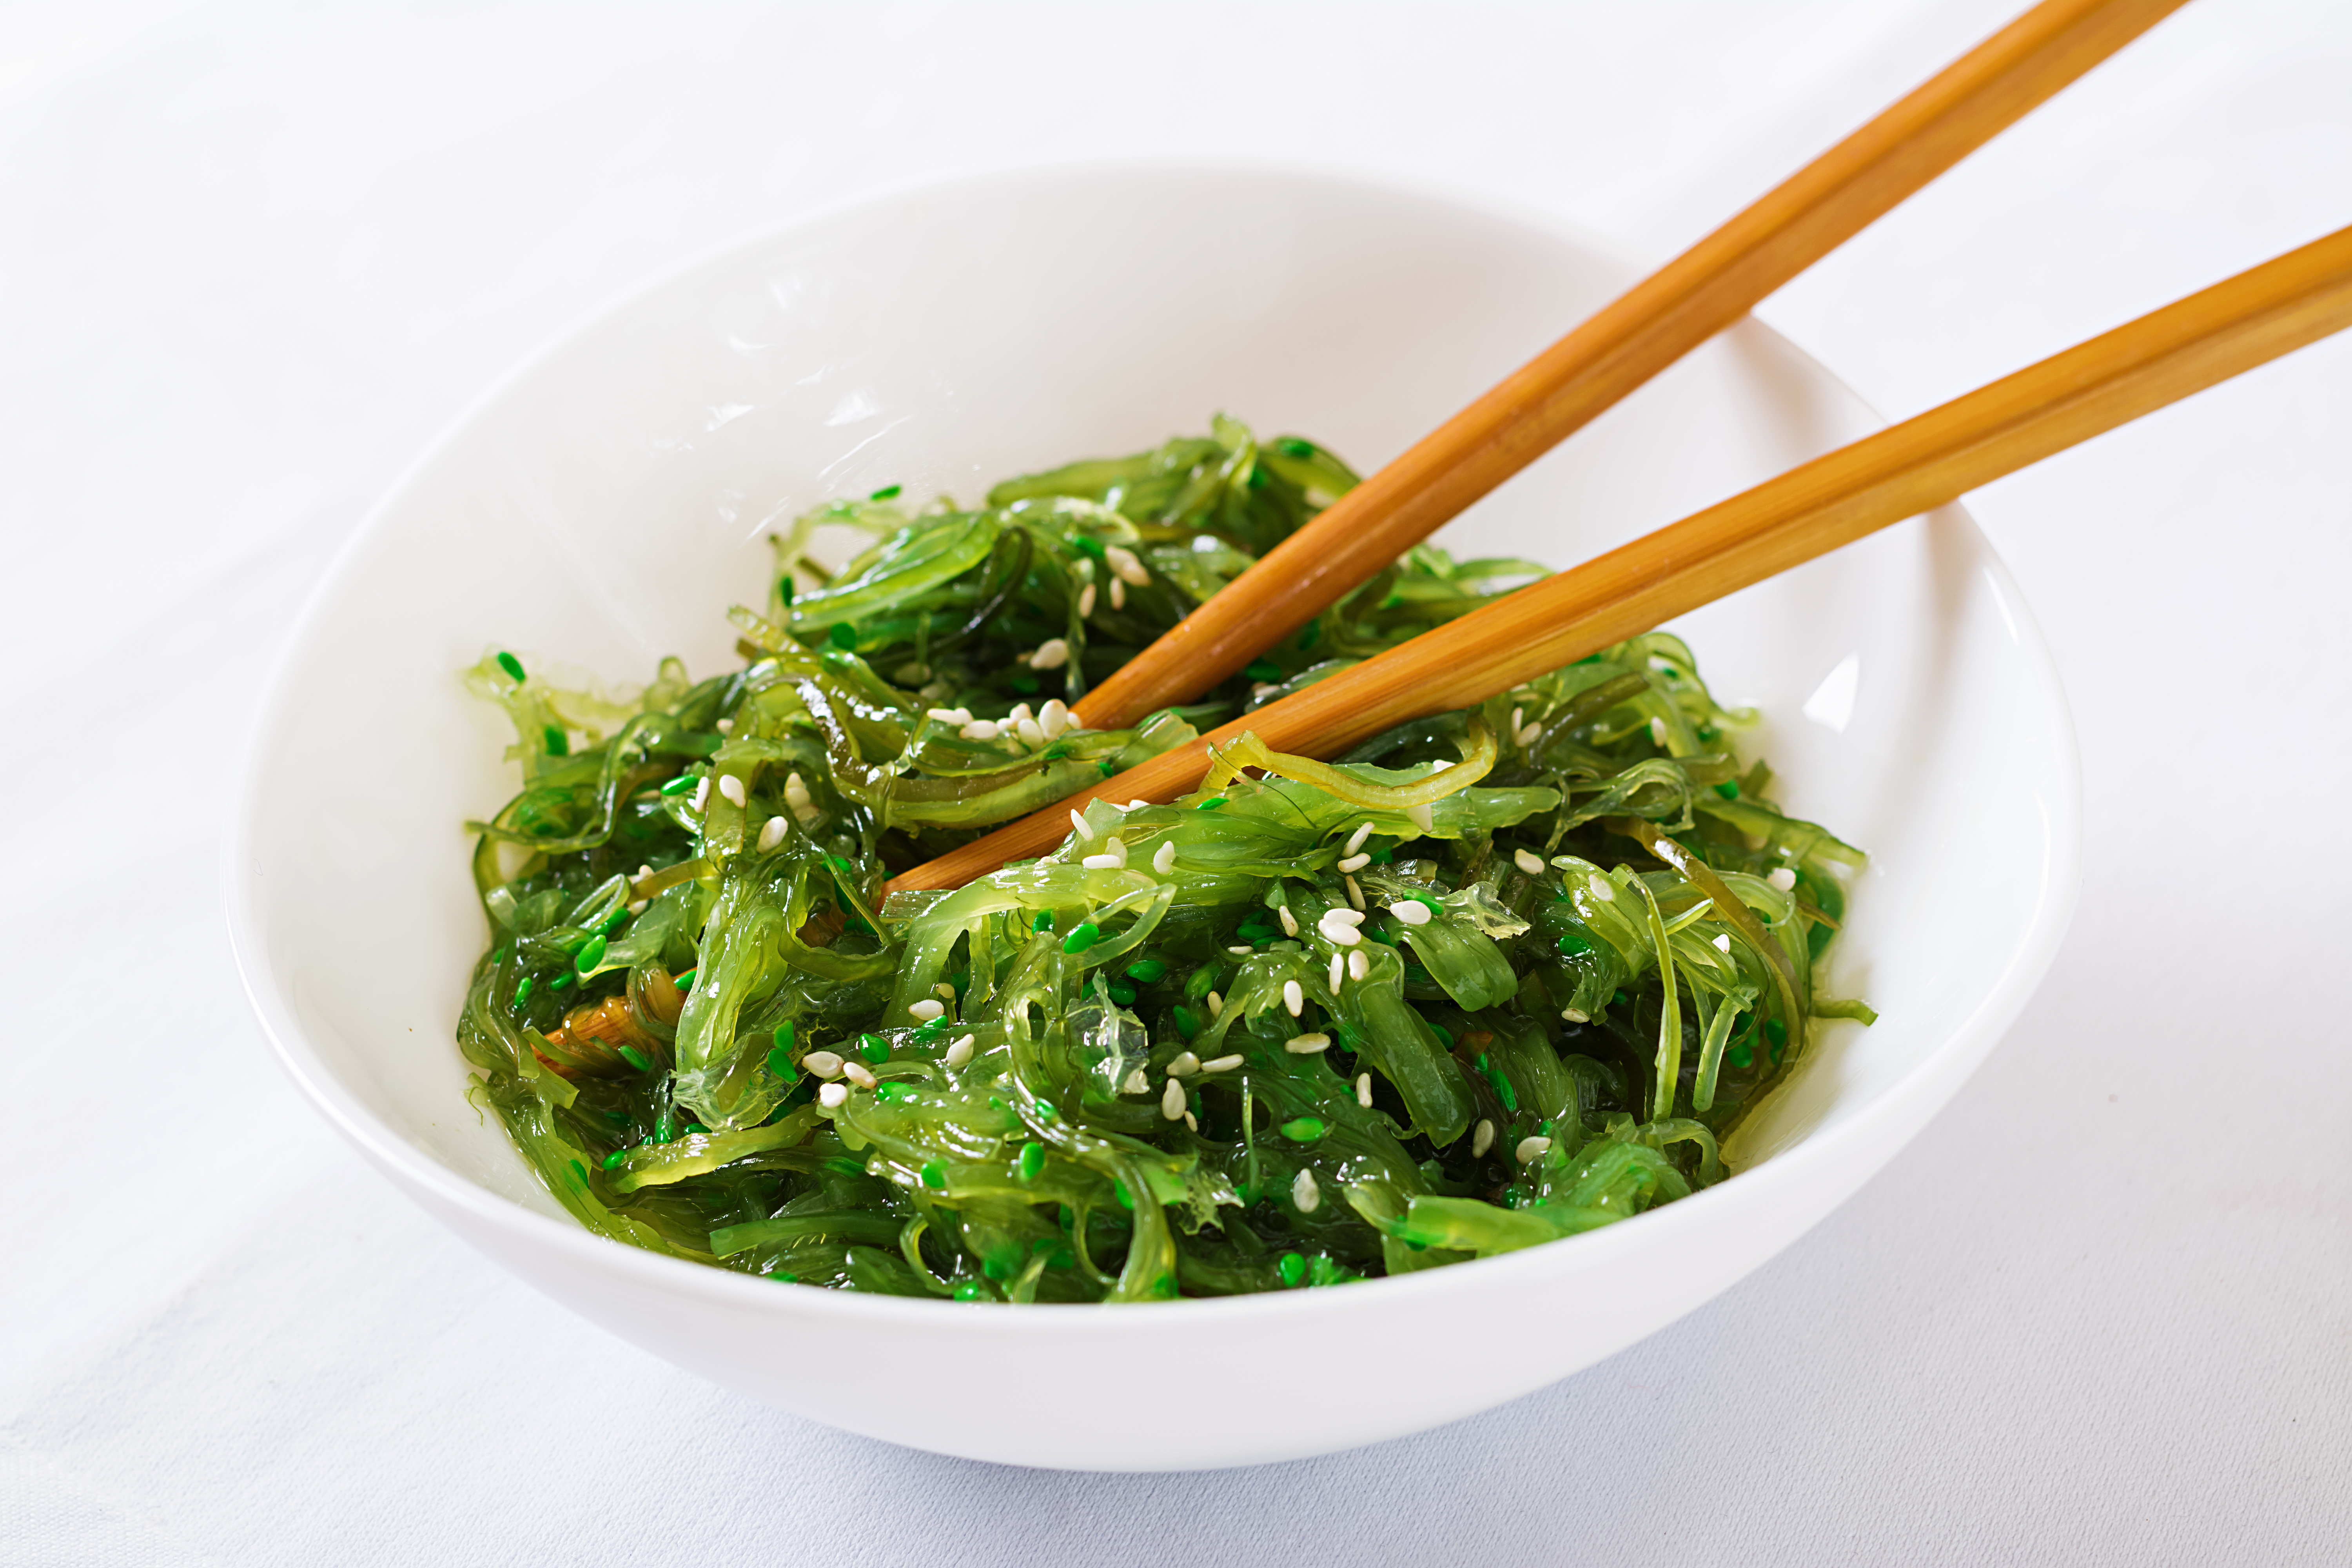 wakame-chuka-seaweed-salad-with-sesame-seeds-bowl-1